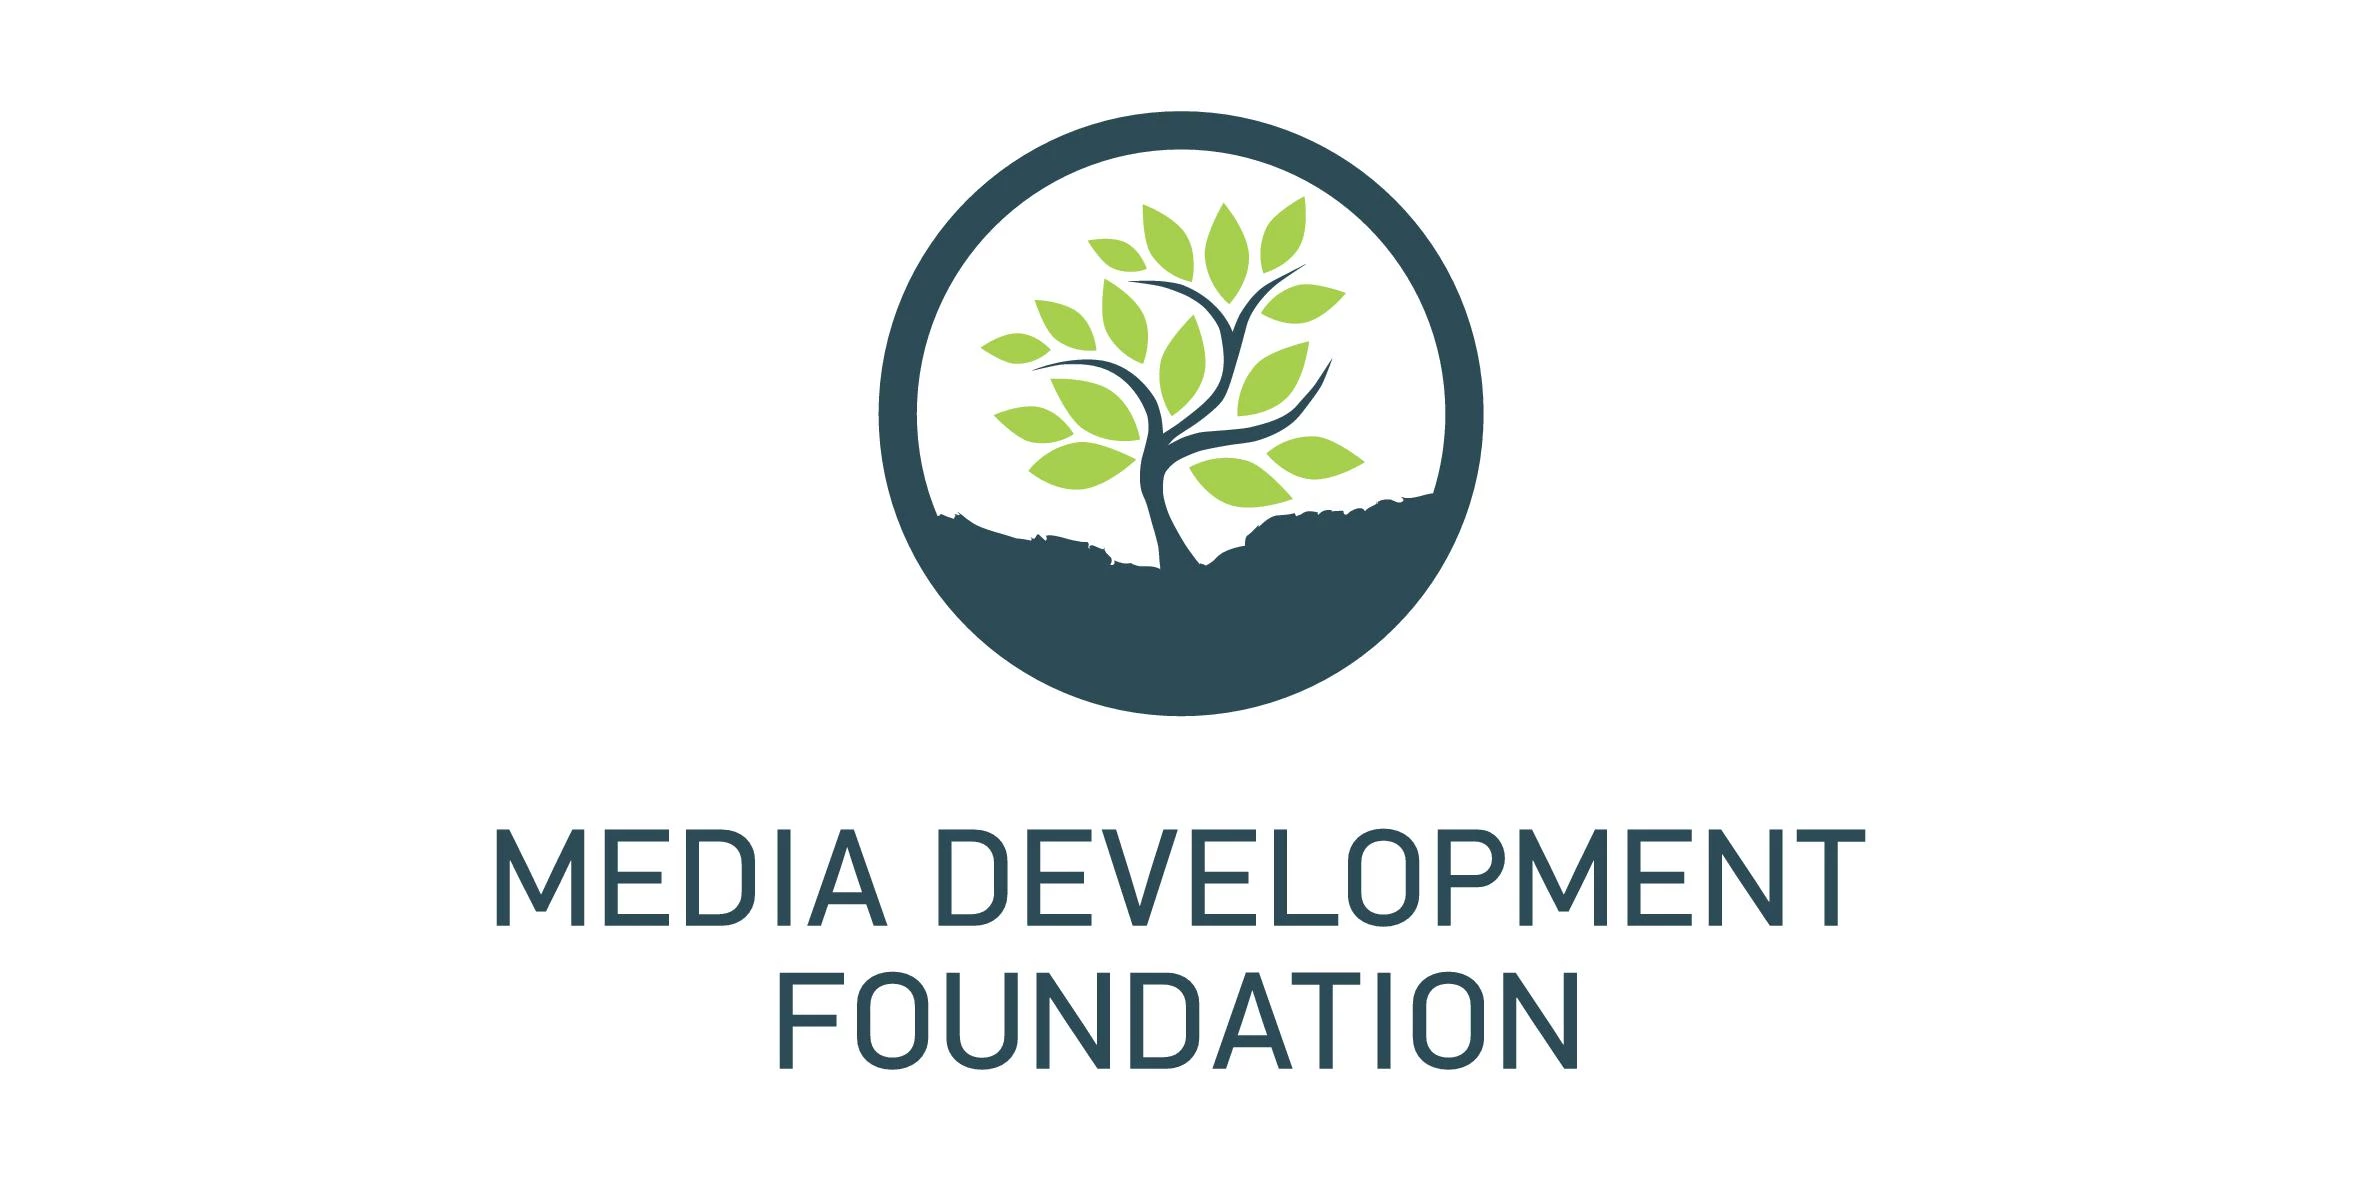 Media Development Foundation організував у Чернівцях хаб для медійників